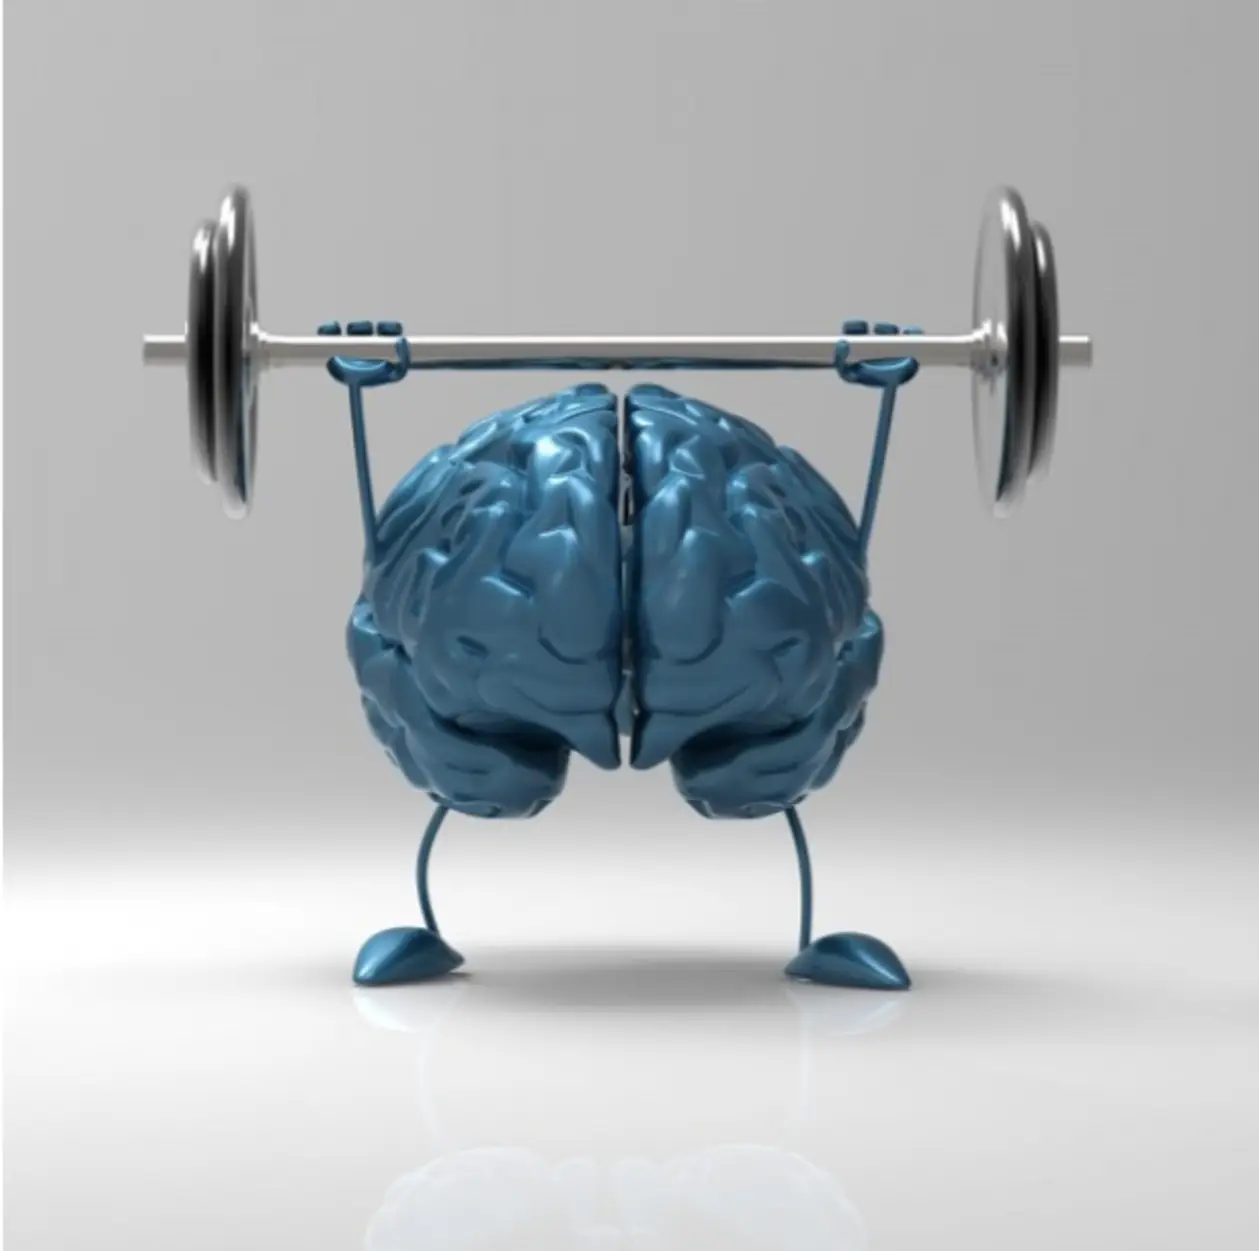 Як фізична активність сприяє роботі мозку?